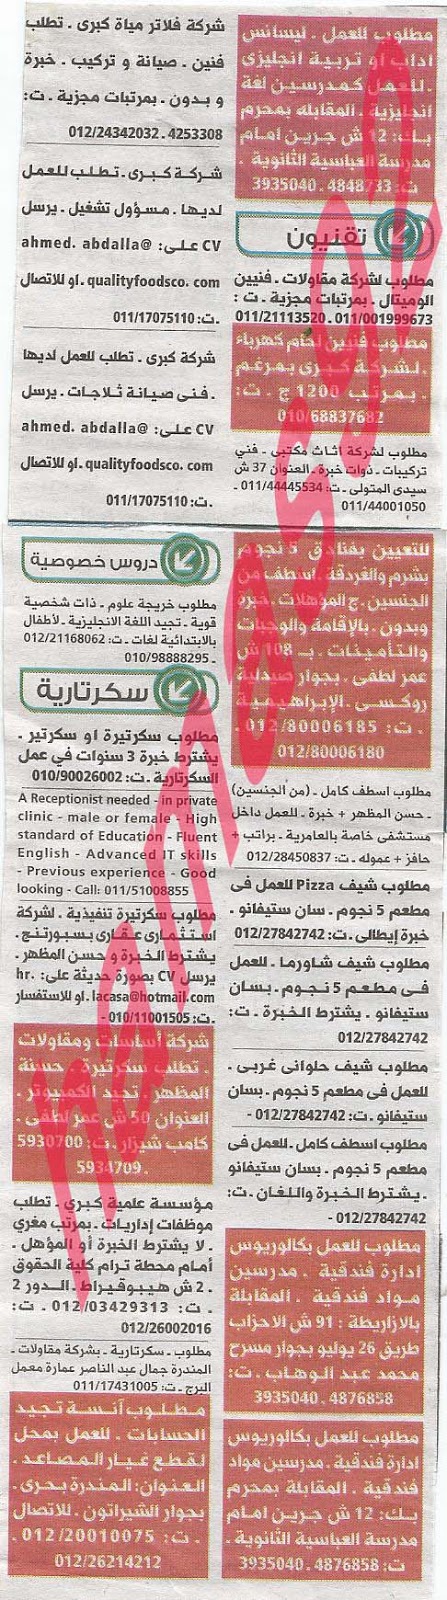 وظائف خالية فى جريدة الوسيط الاسكندرية الجمعة 06-09-2013 %D9%88+%D8%B3+%D8%B3+9